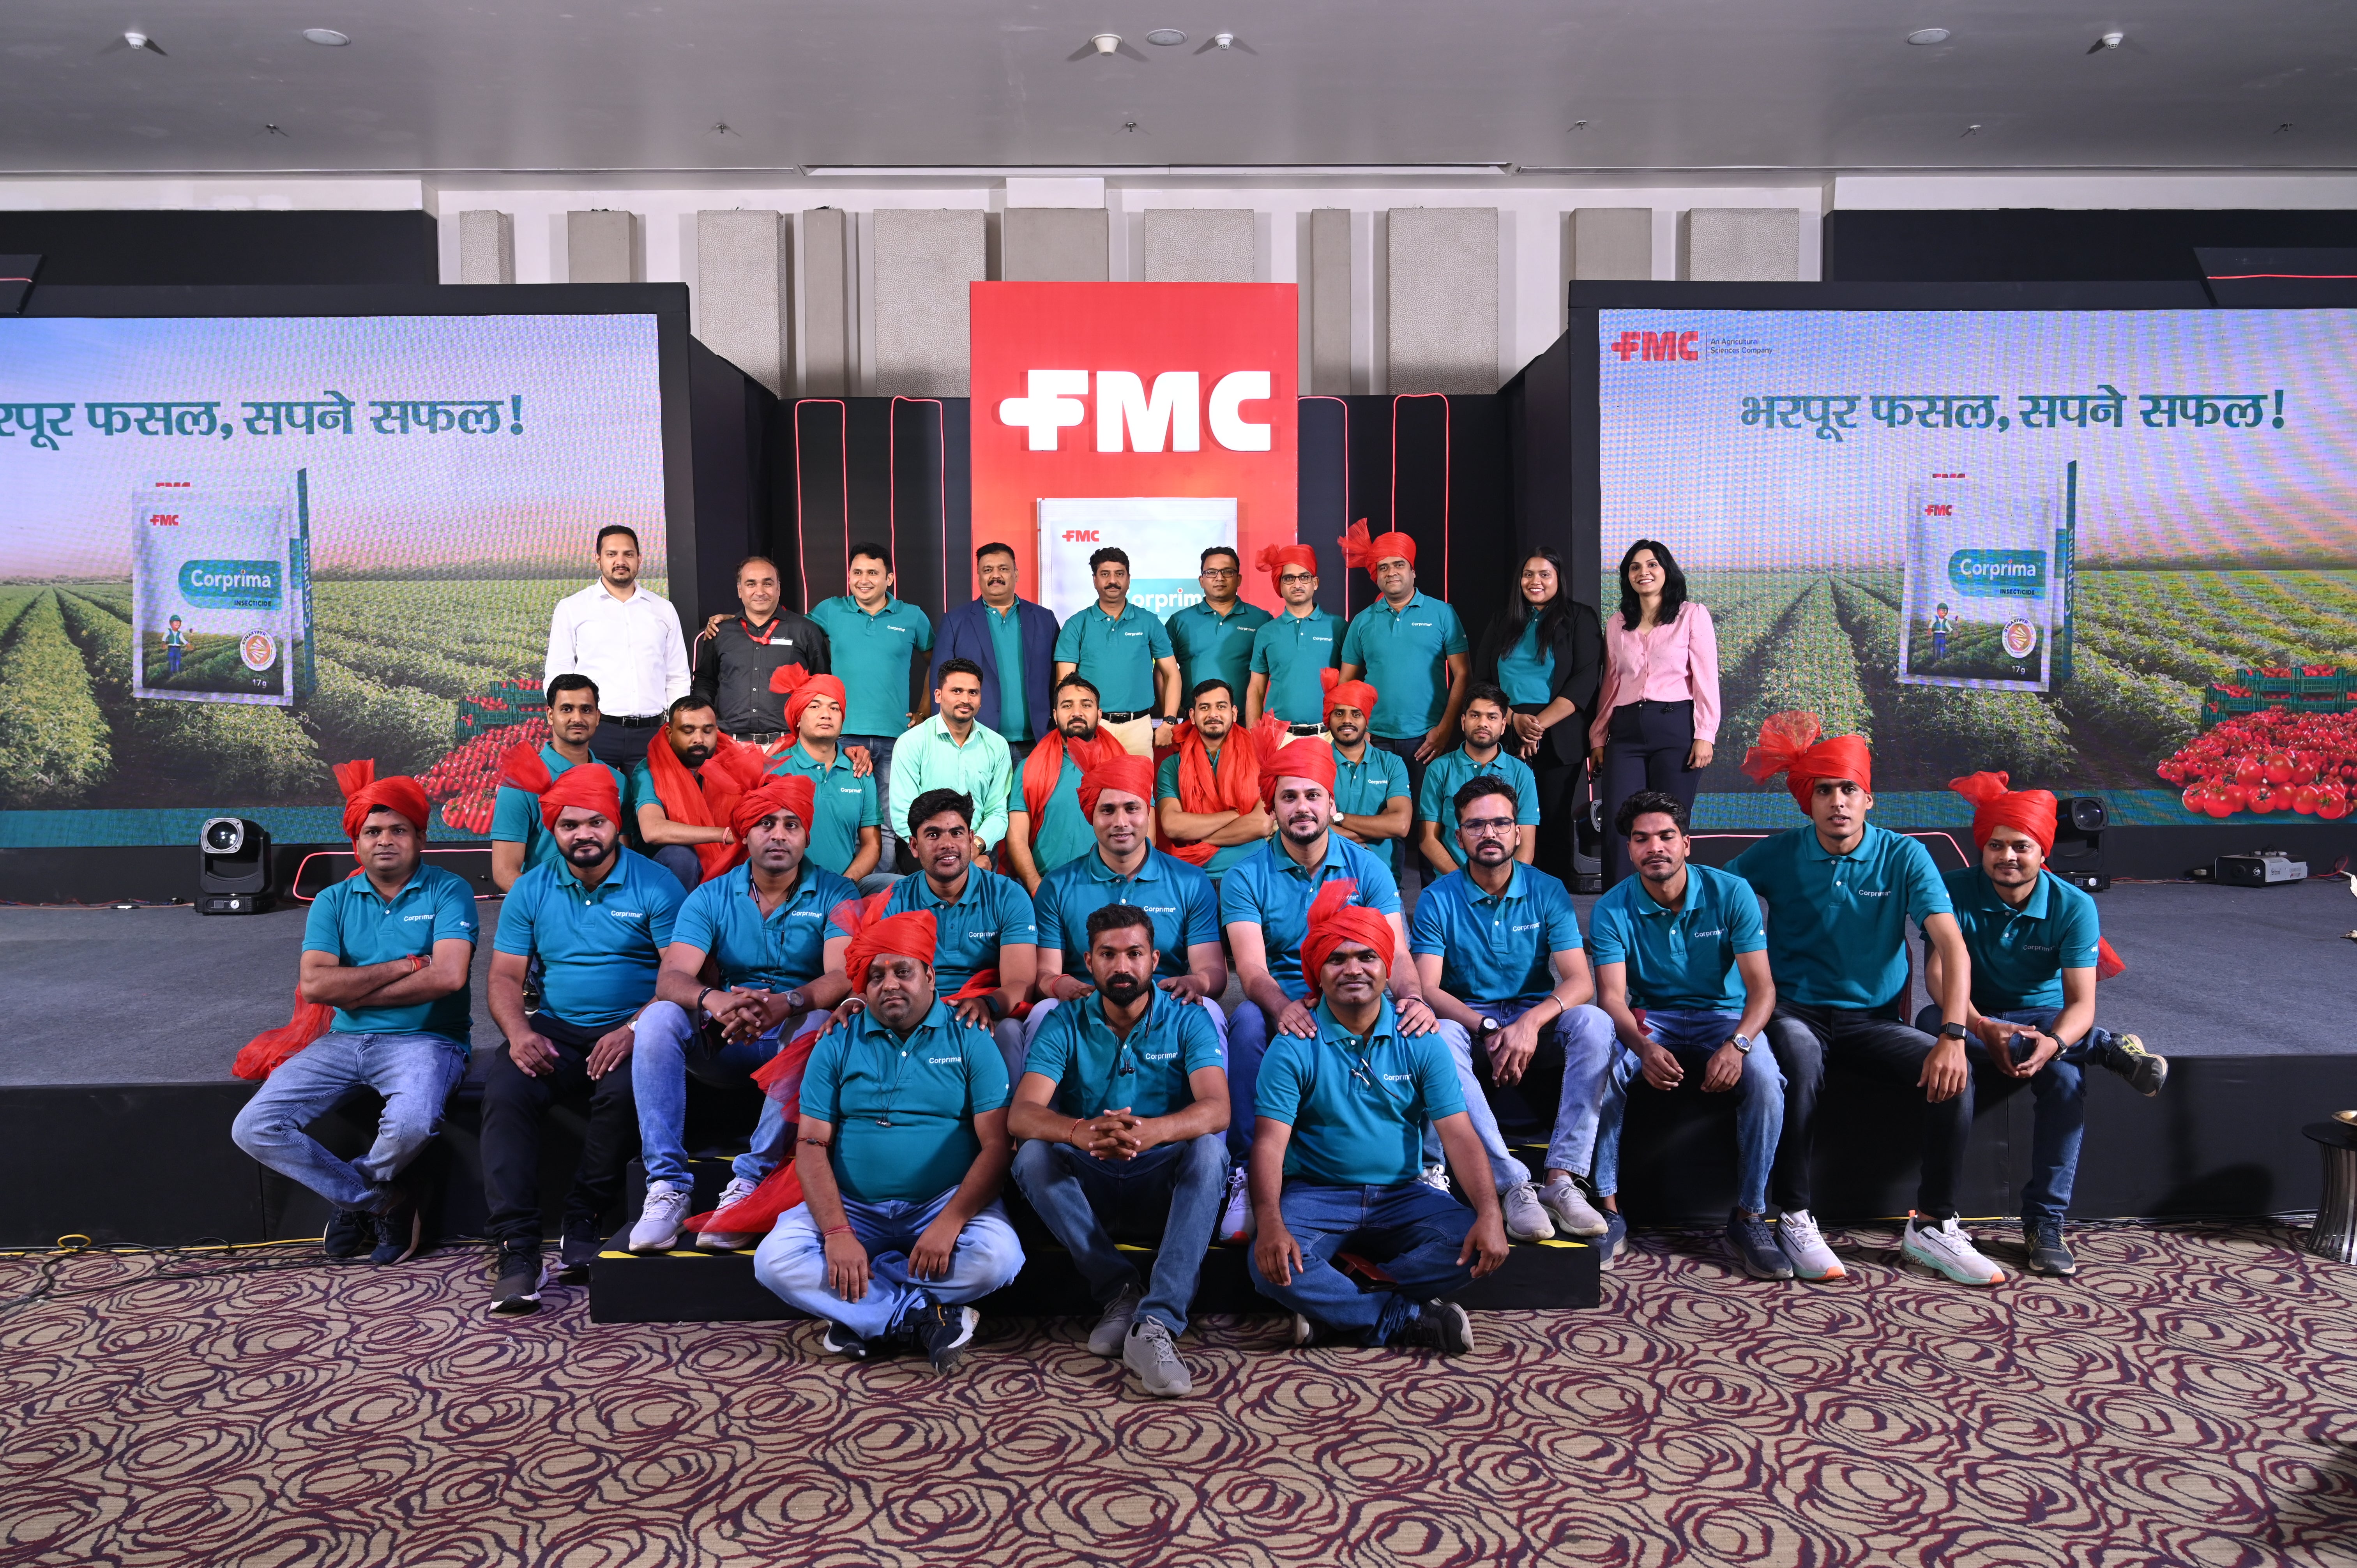 एफएमसी इंडिया ने टमाटर और भिंडी की फसल उगाने वाले किसानों की सहायता के लिए एक नया कीटनाशक कॉरप्रिमा लॉन्च किया है